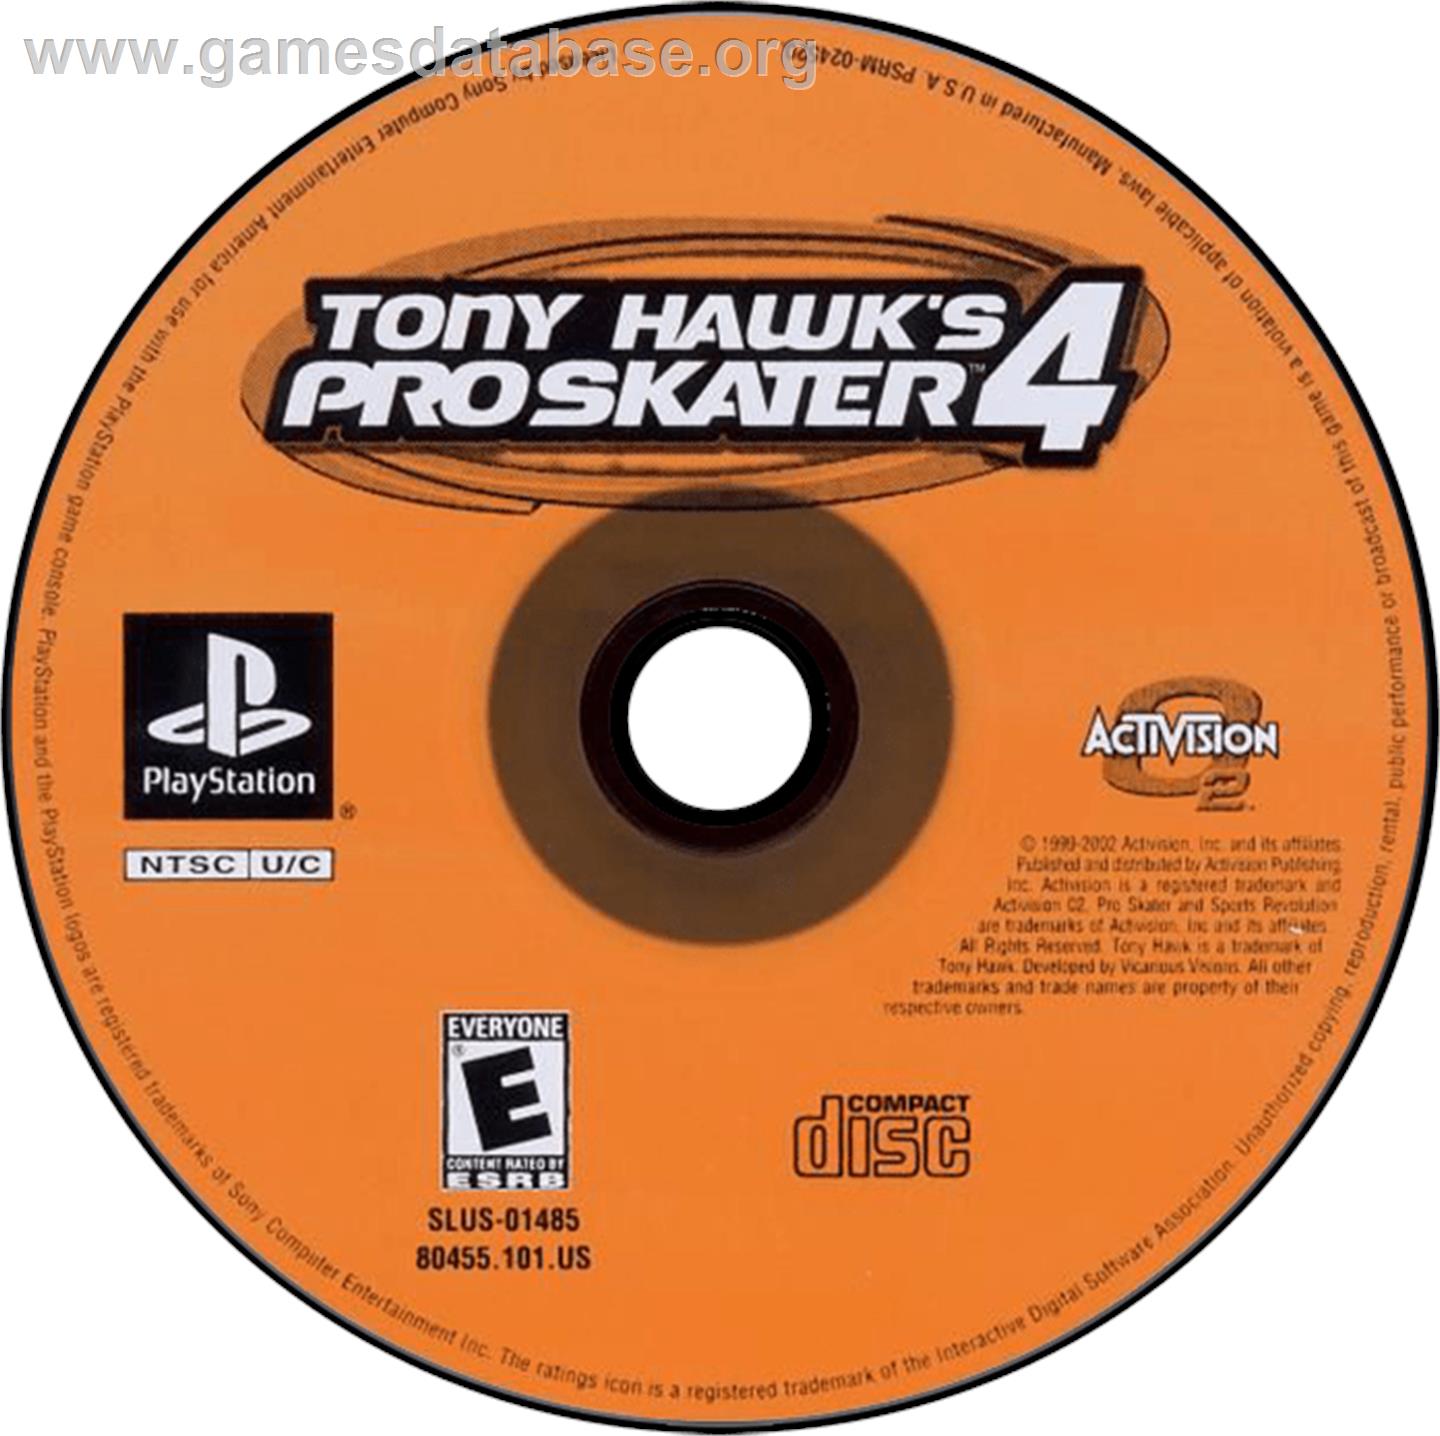 Tony Hawk's Pro Skater 4 - Sony Playstation - Artwork - Disc